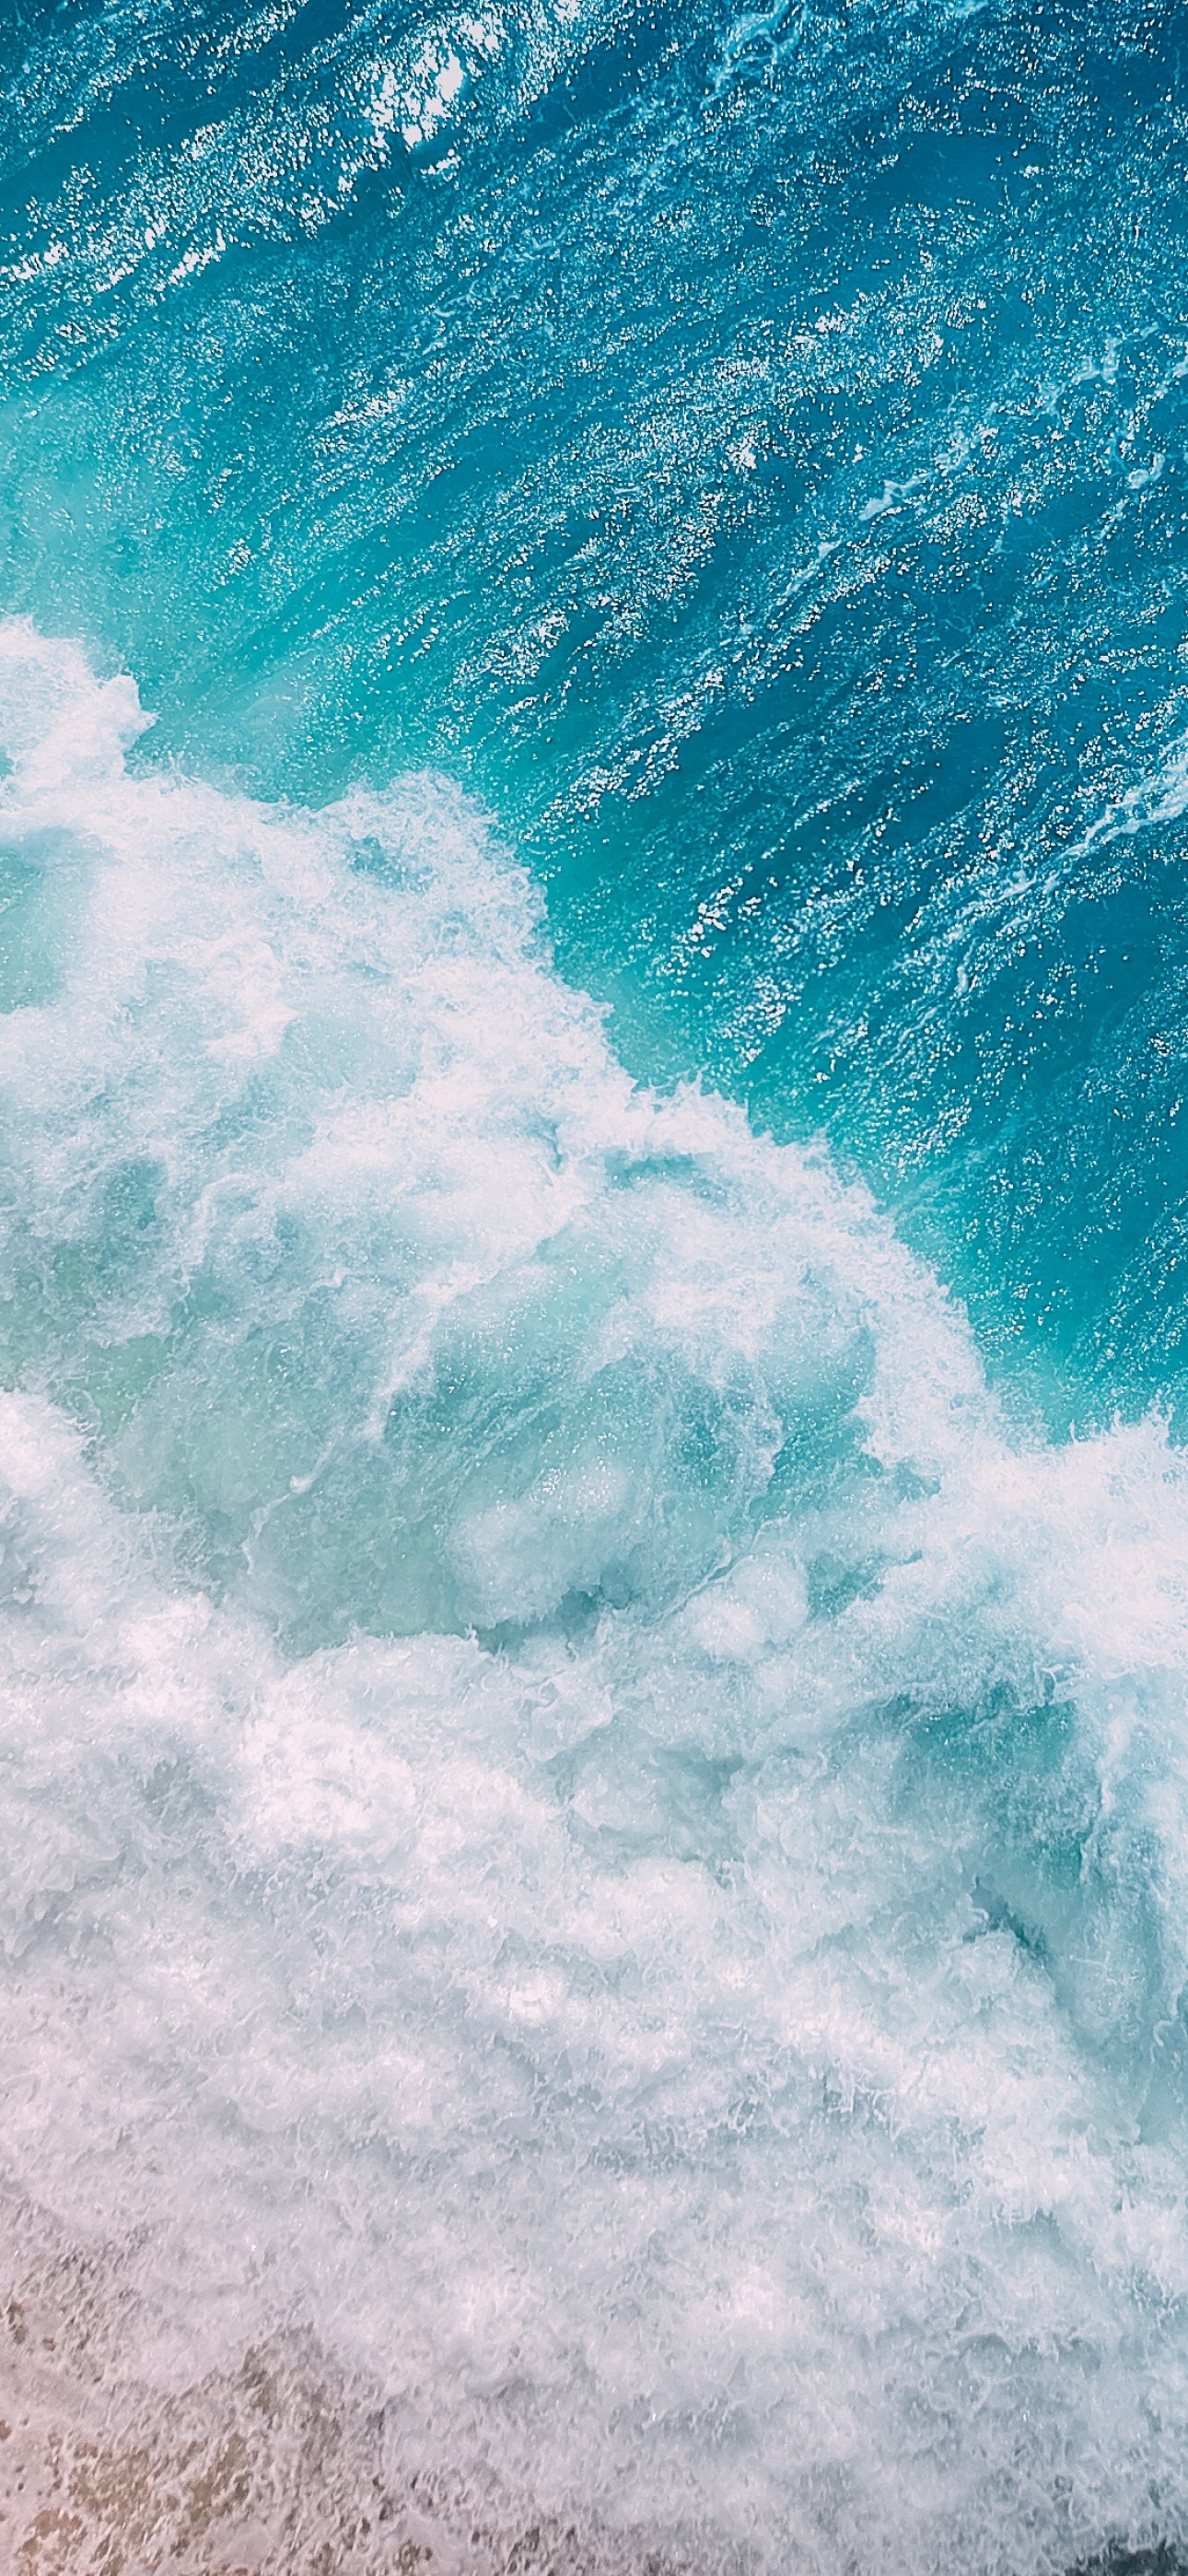 Đại dương (Ocean Waves): Hãy đắm mình trong không gian yên tĩnh và tuyệt đẹp của con đại dương rộng lớn với những con sóng nổi tiếng biển cả. Hình ảnh sẽ đưa bạn đến những bãi cát trắng và nước biển màu xanh ngọc bích. Đây sẽ là một trải nghiệm thú vị và đầy thư giãn.